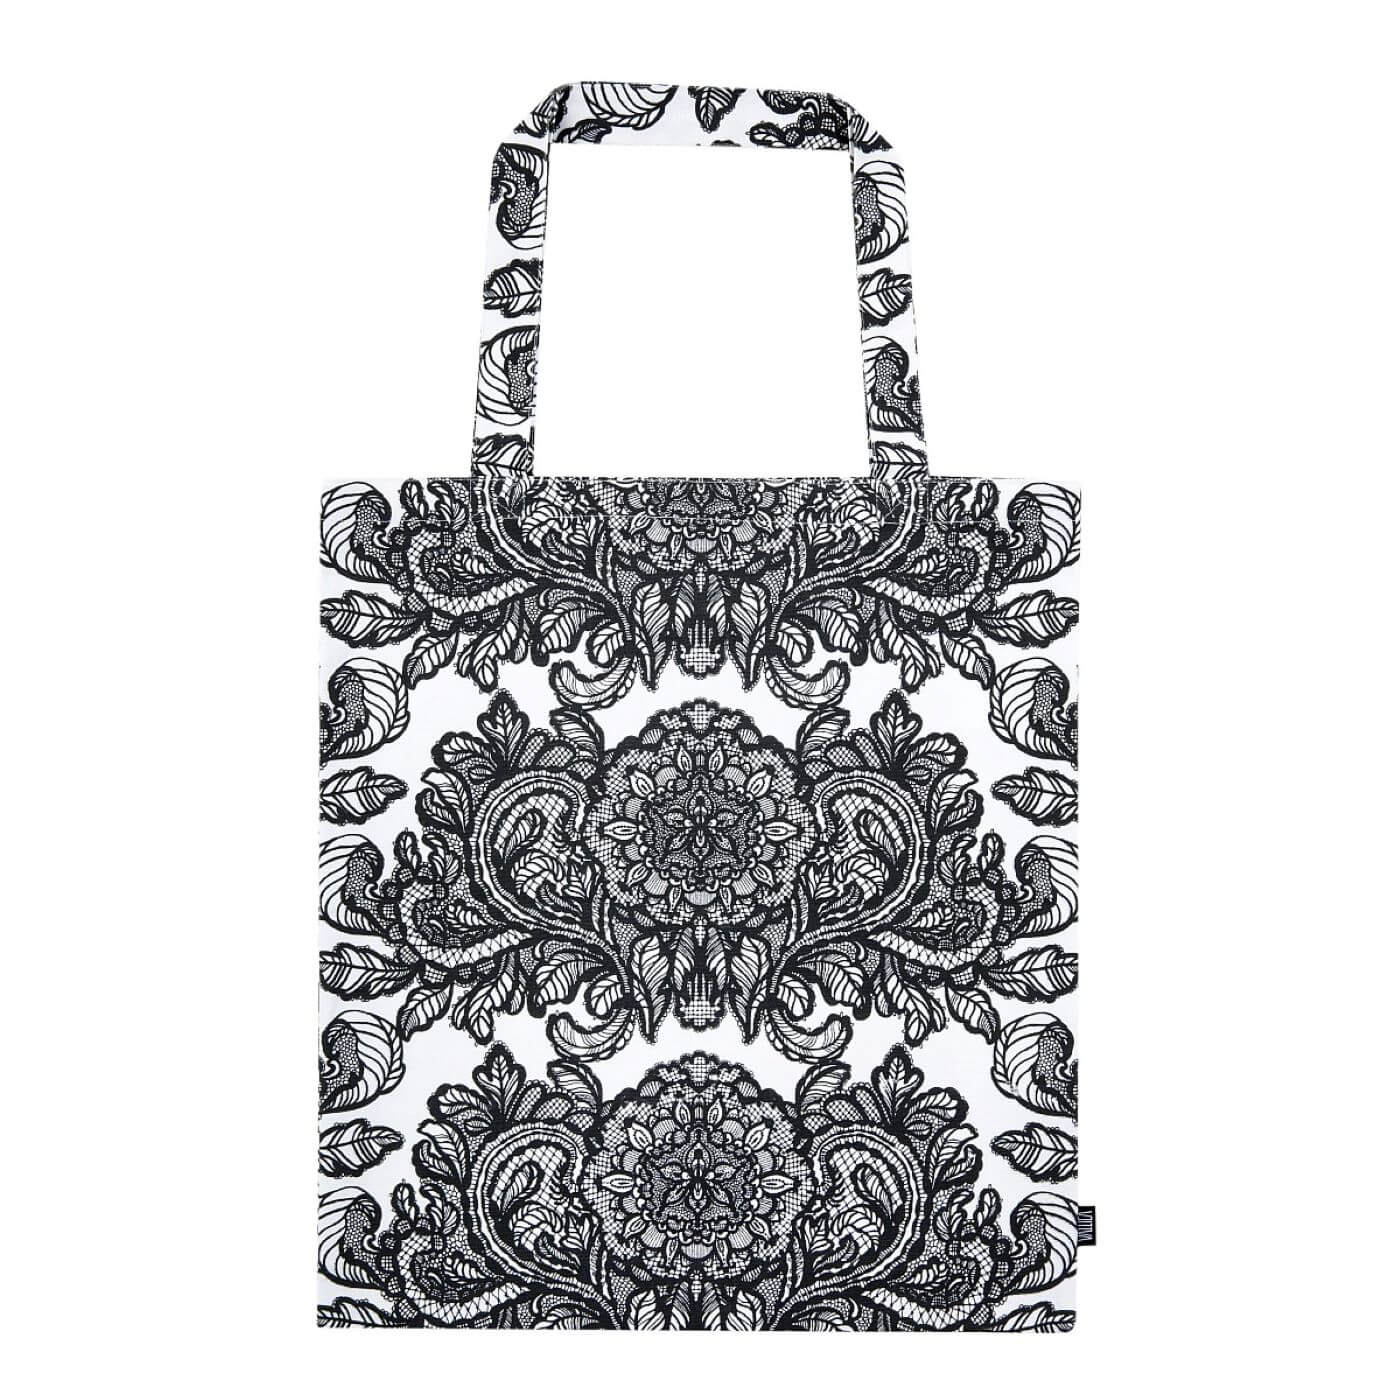 Elegancka torba bawełniana ALEKSANTERI. Czarny graficzny wzór stylizowanych kwiatów i liści konwalii na białym tle. Torba bawełniana na zakupy widoczna w całości. Skandynawski design